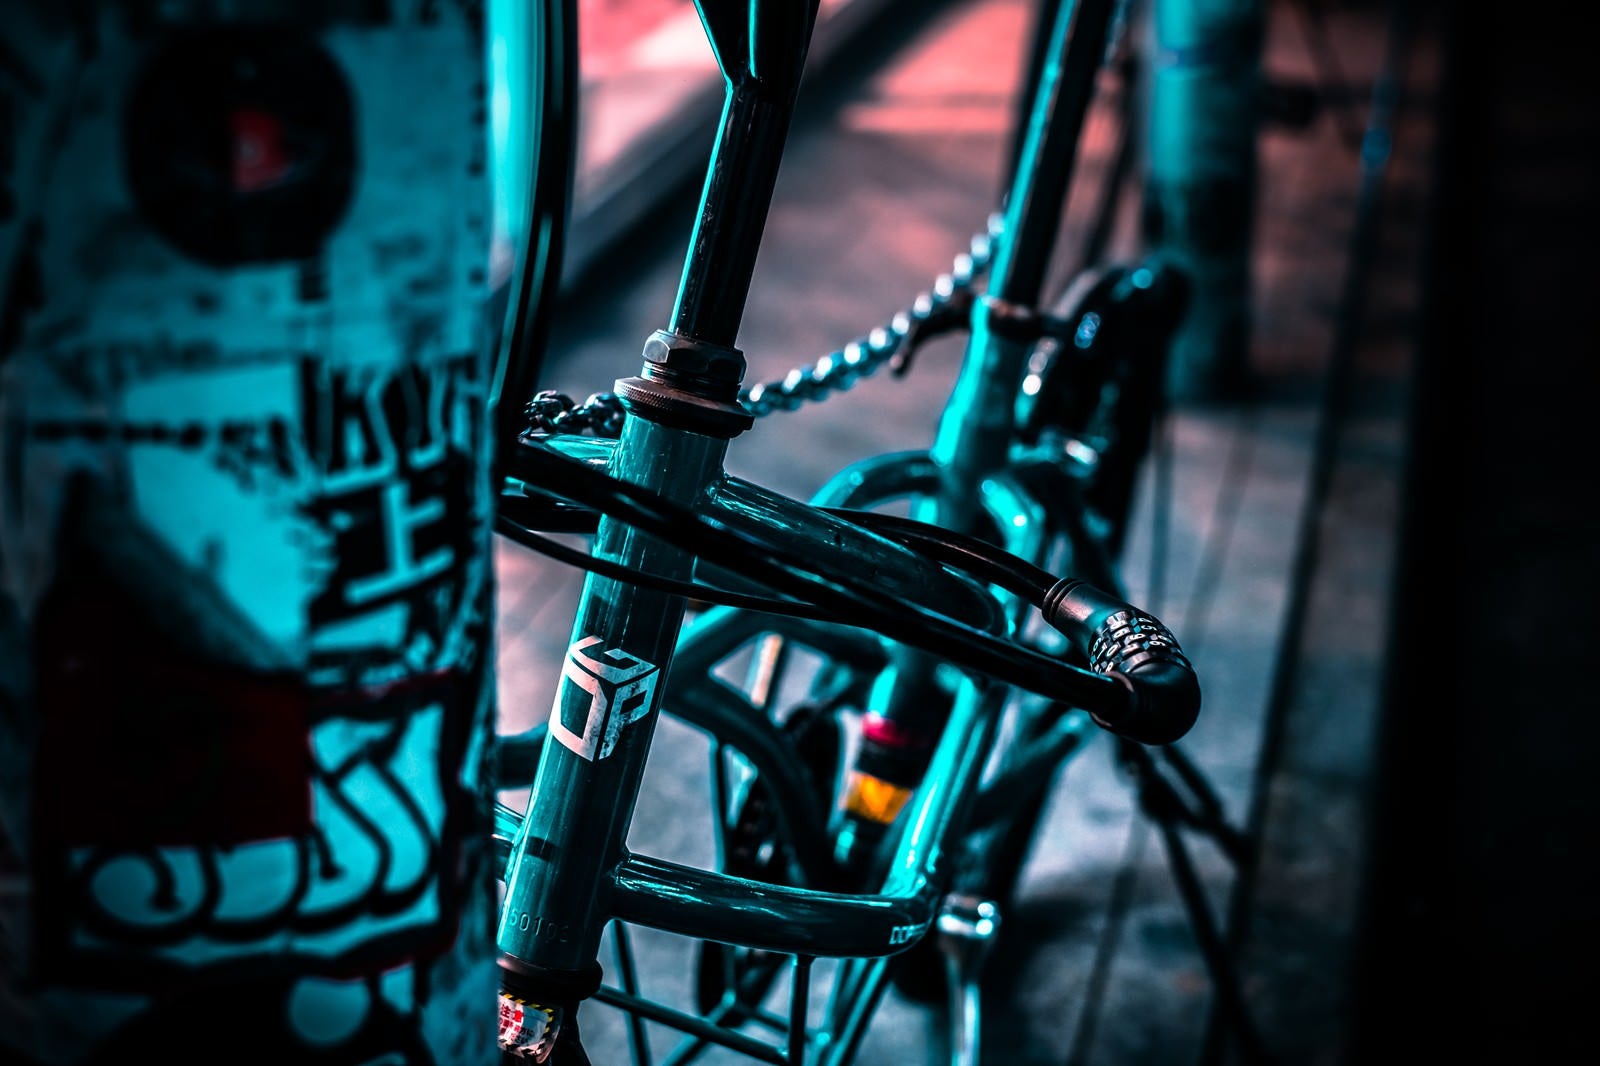 「路肩に鍵をかけて停まる自転車」の写真